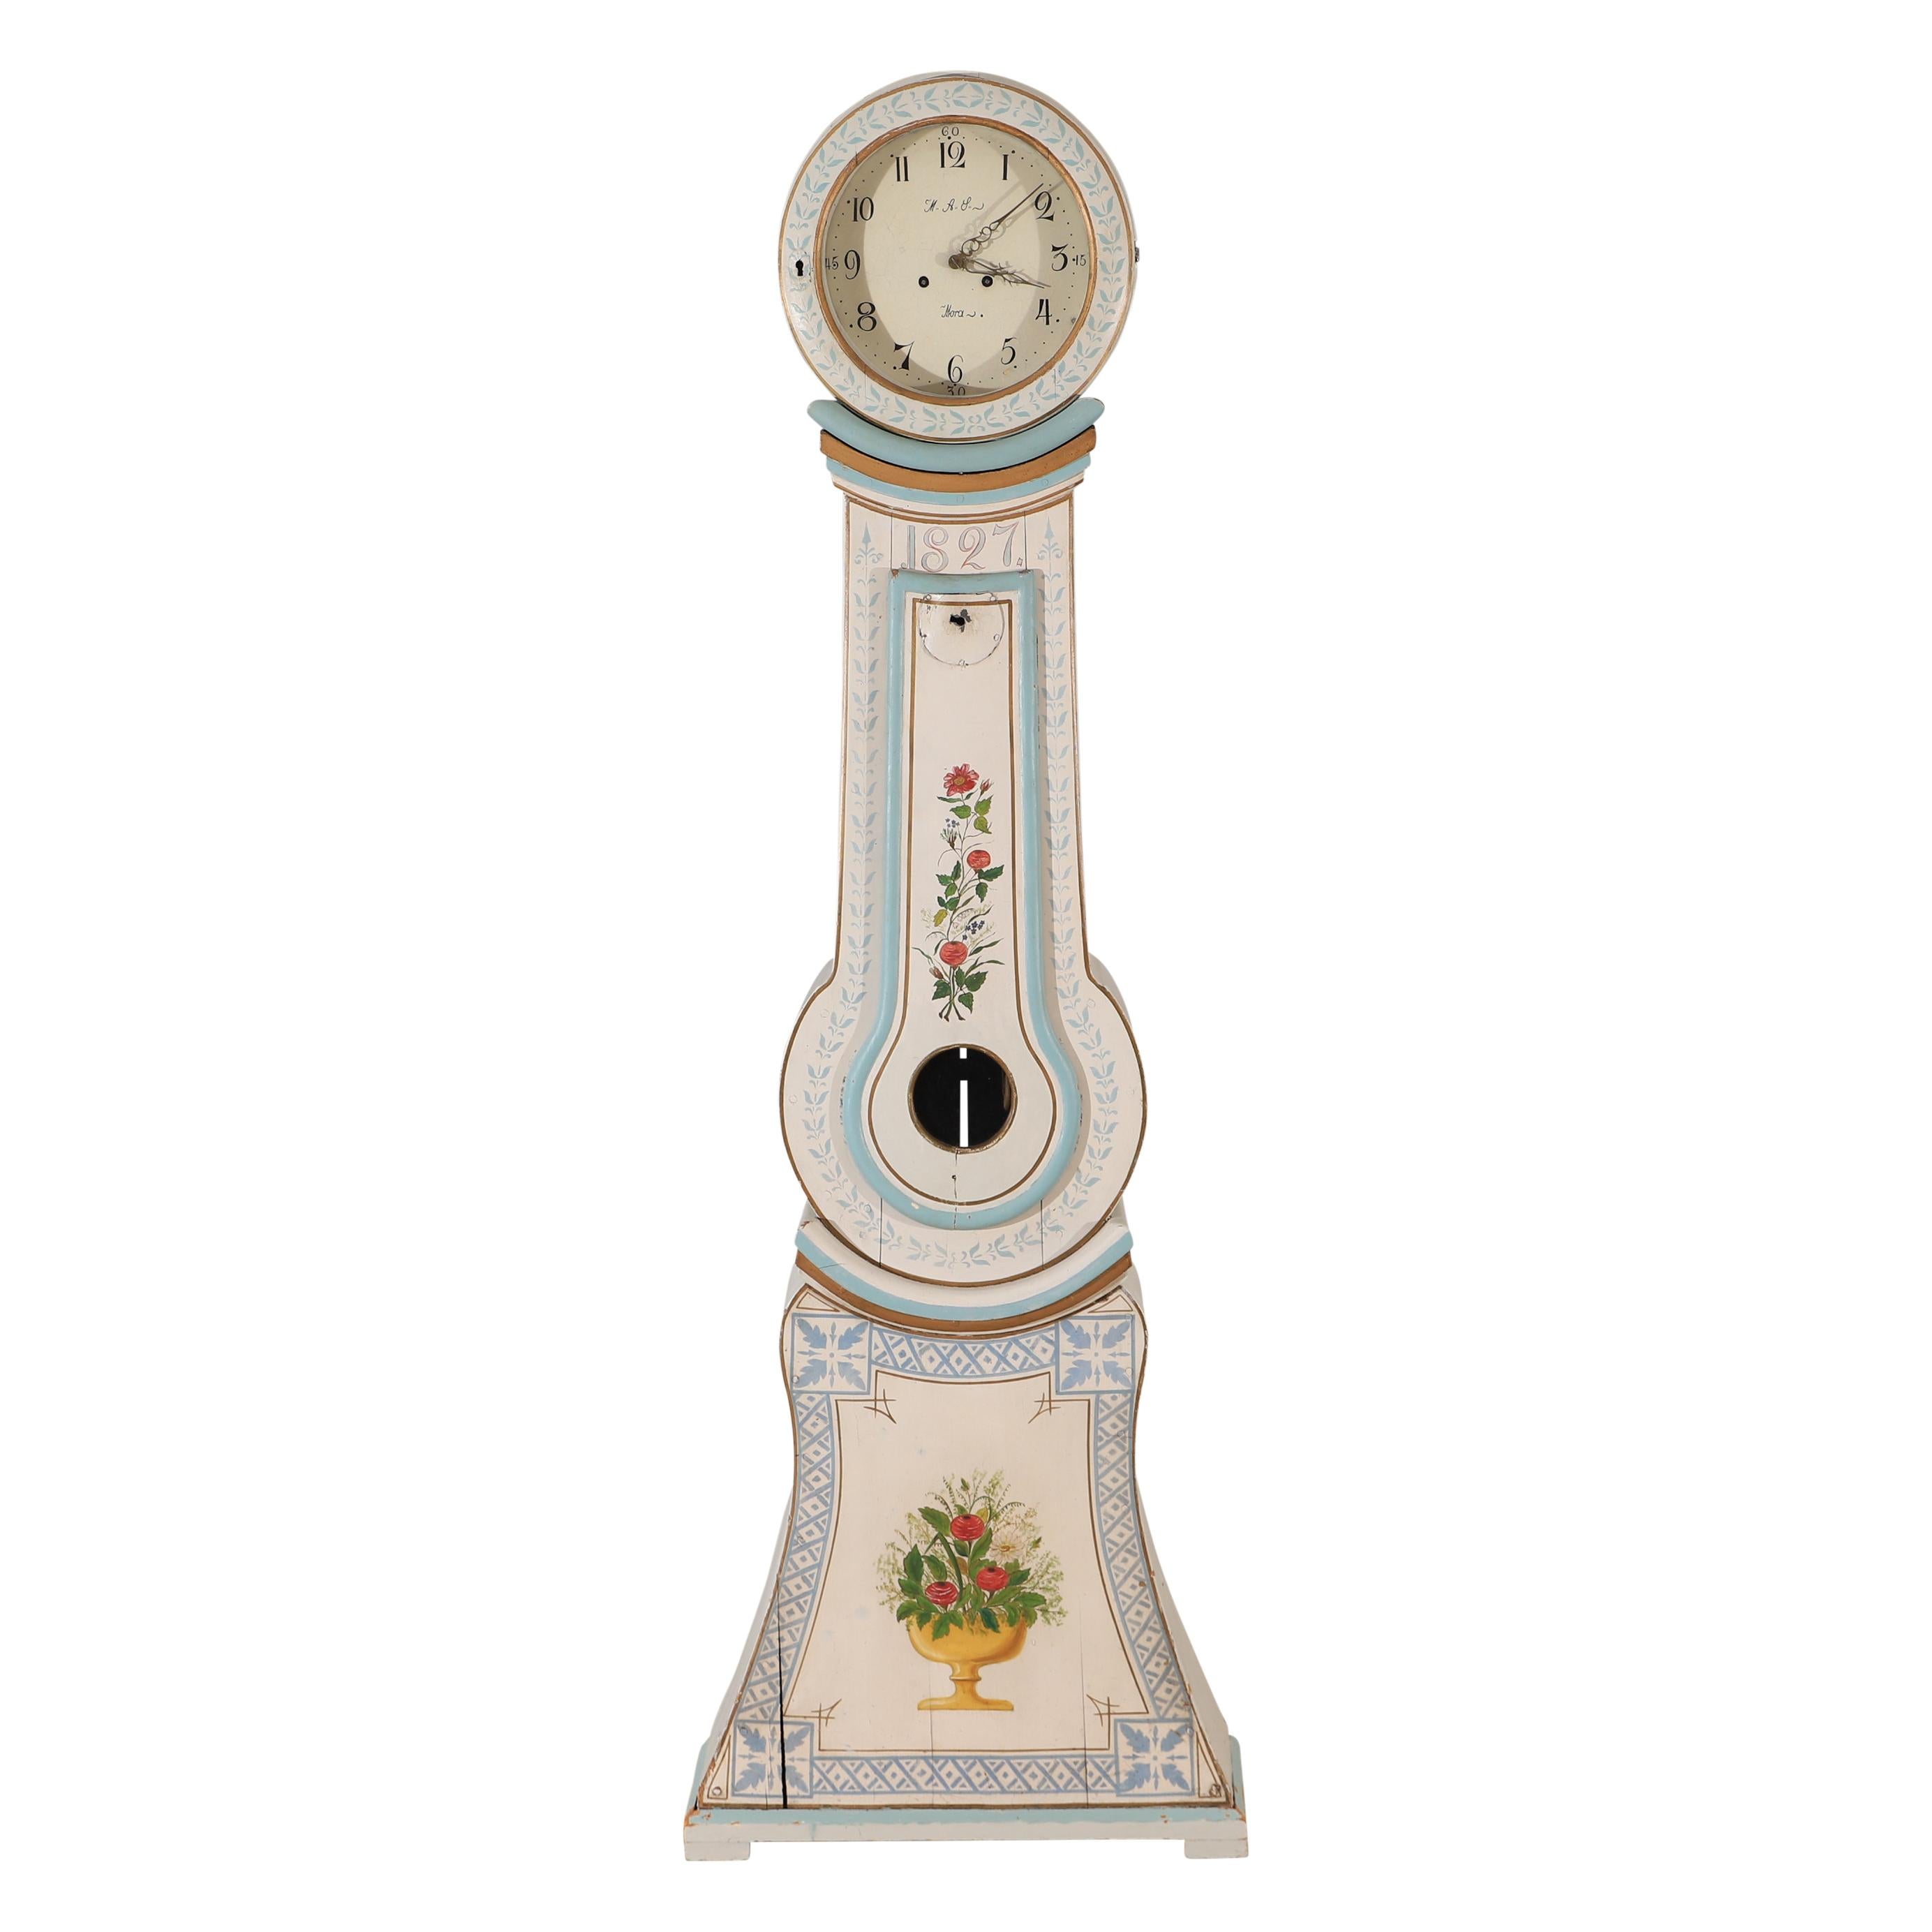 Antike schwedische Mora-Uhr, datiert 1827, mit dekorativen, gemalten Blumendetails. Zifferblatt mit den Initialen des Uhrmachers AAL und Mora. Originaler Mechanismus mit Gewichten und Pendel. Nicht funktionsgeprüft. 
Maße: Breite:68cm /